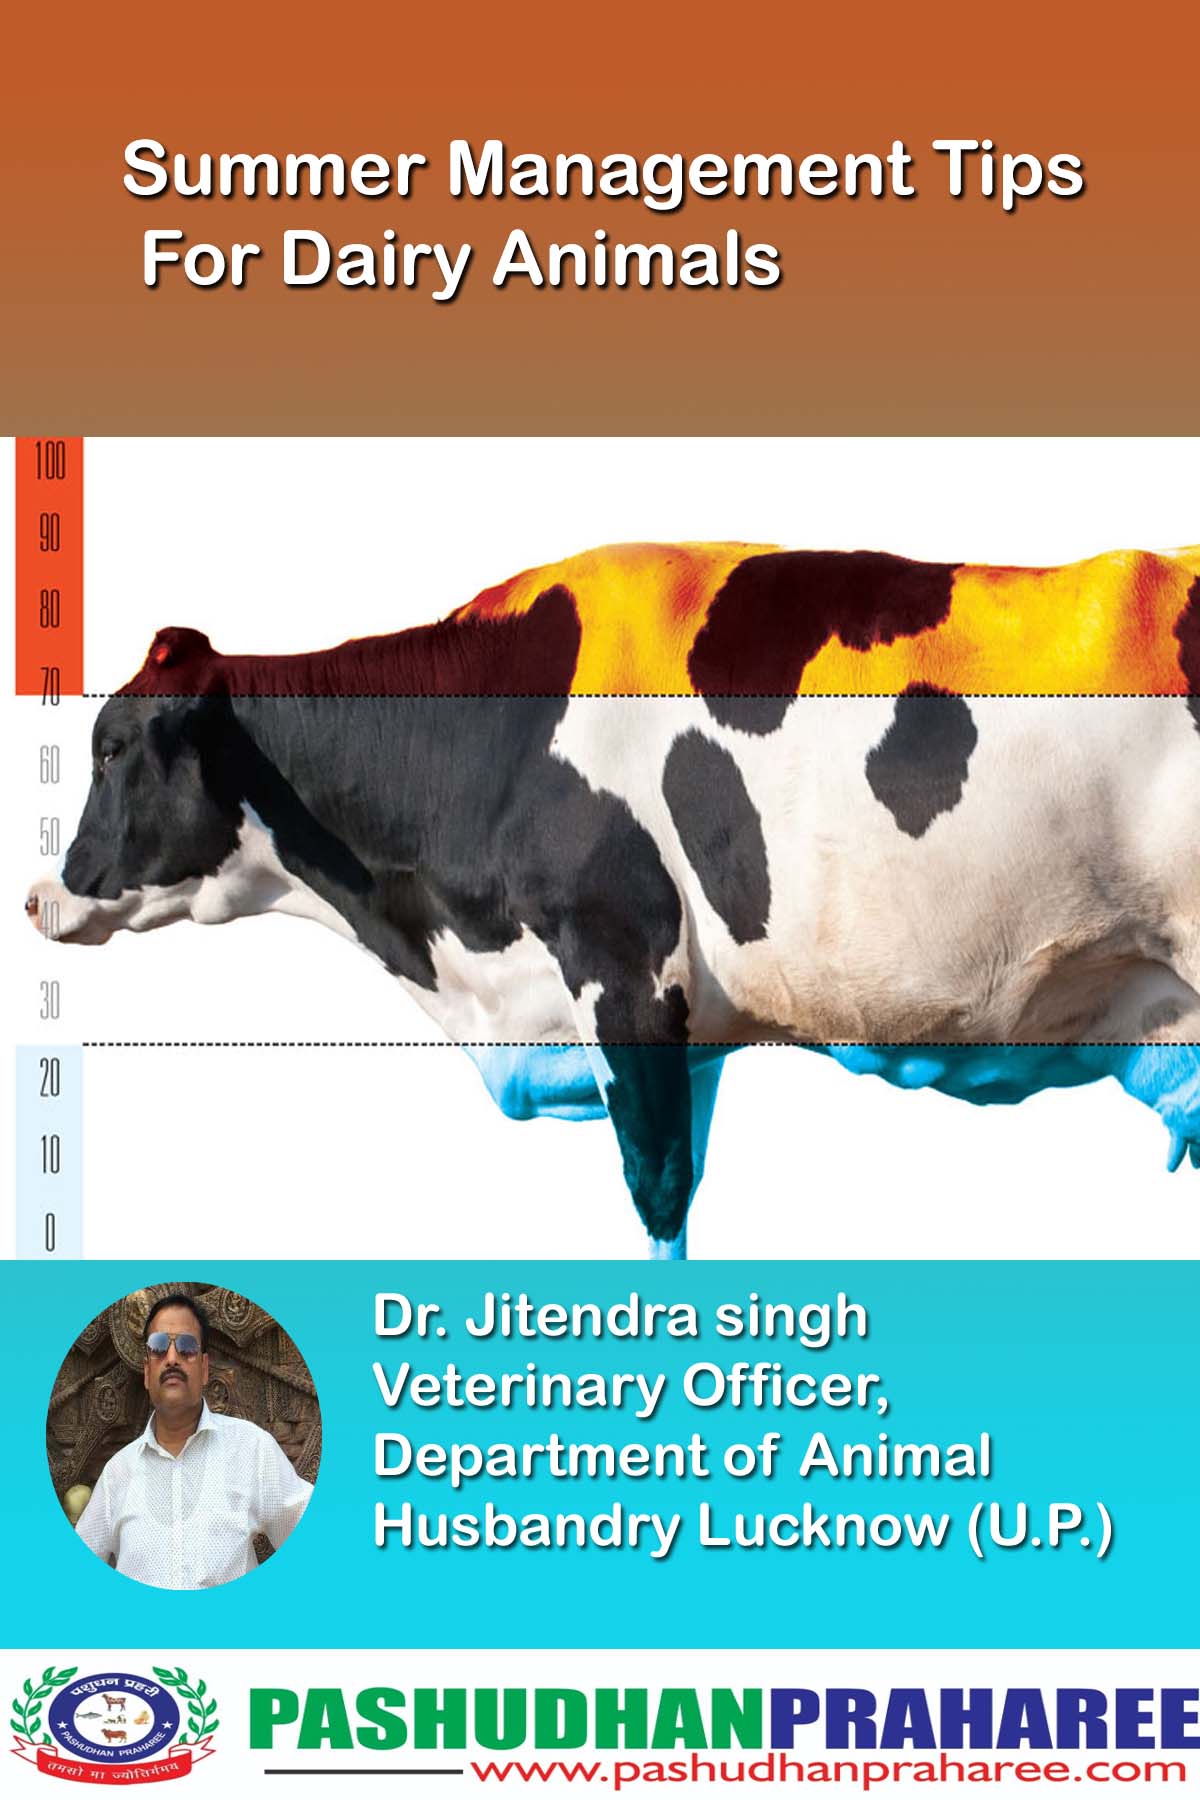 Summer Management of Dairy Animals